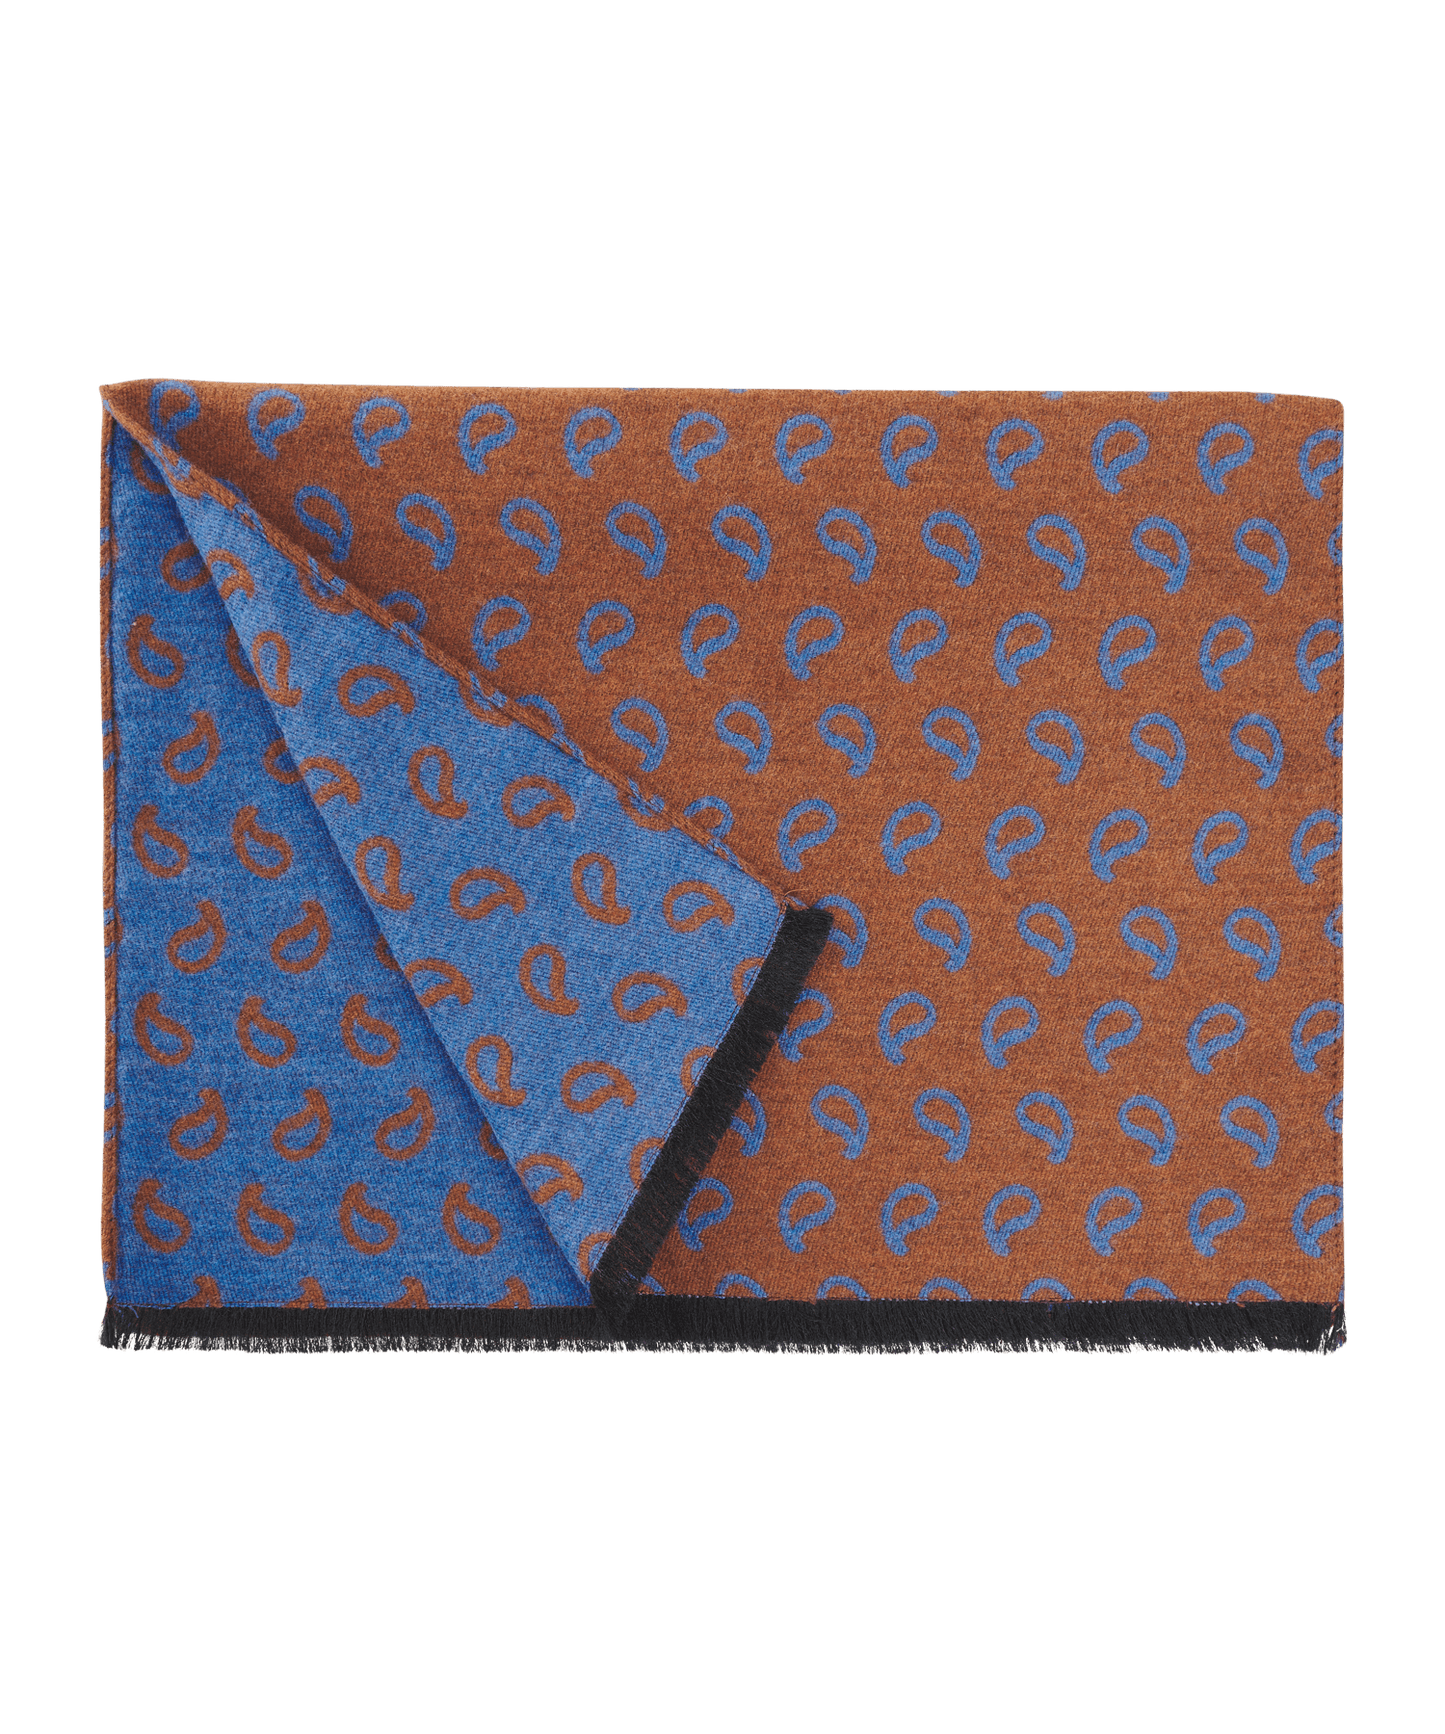 Sjaal wol en zijde bruin/blauw